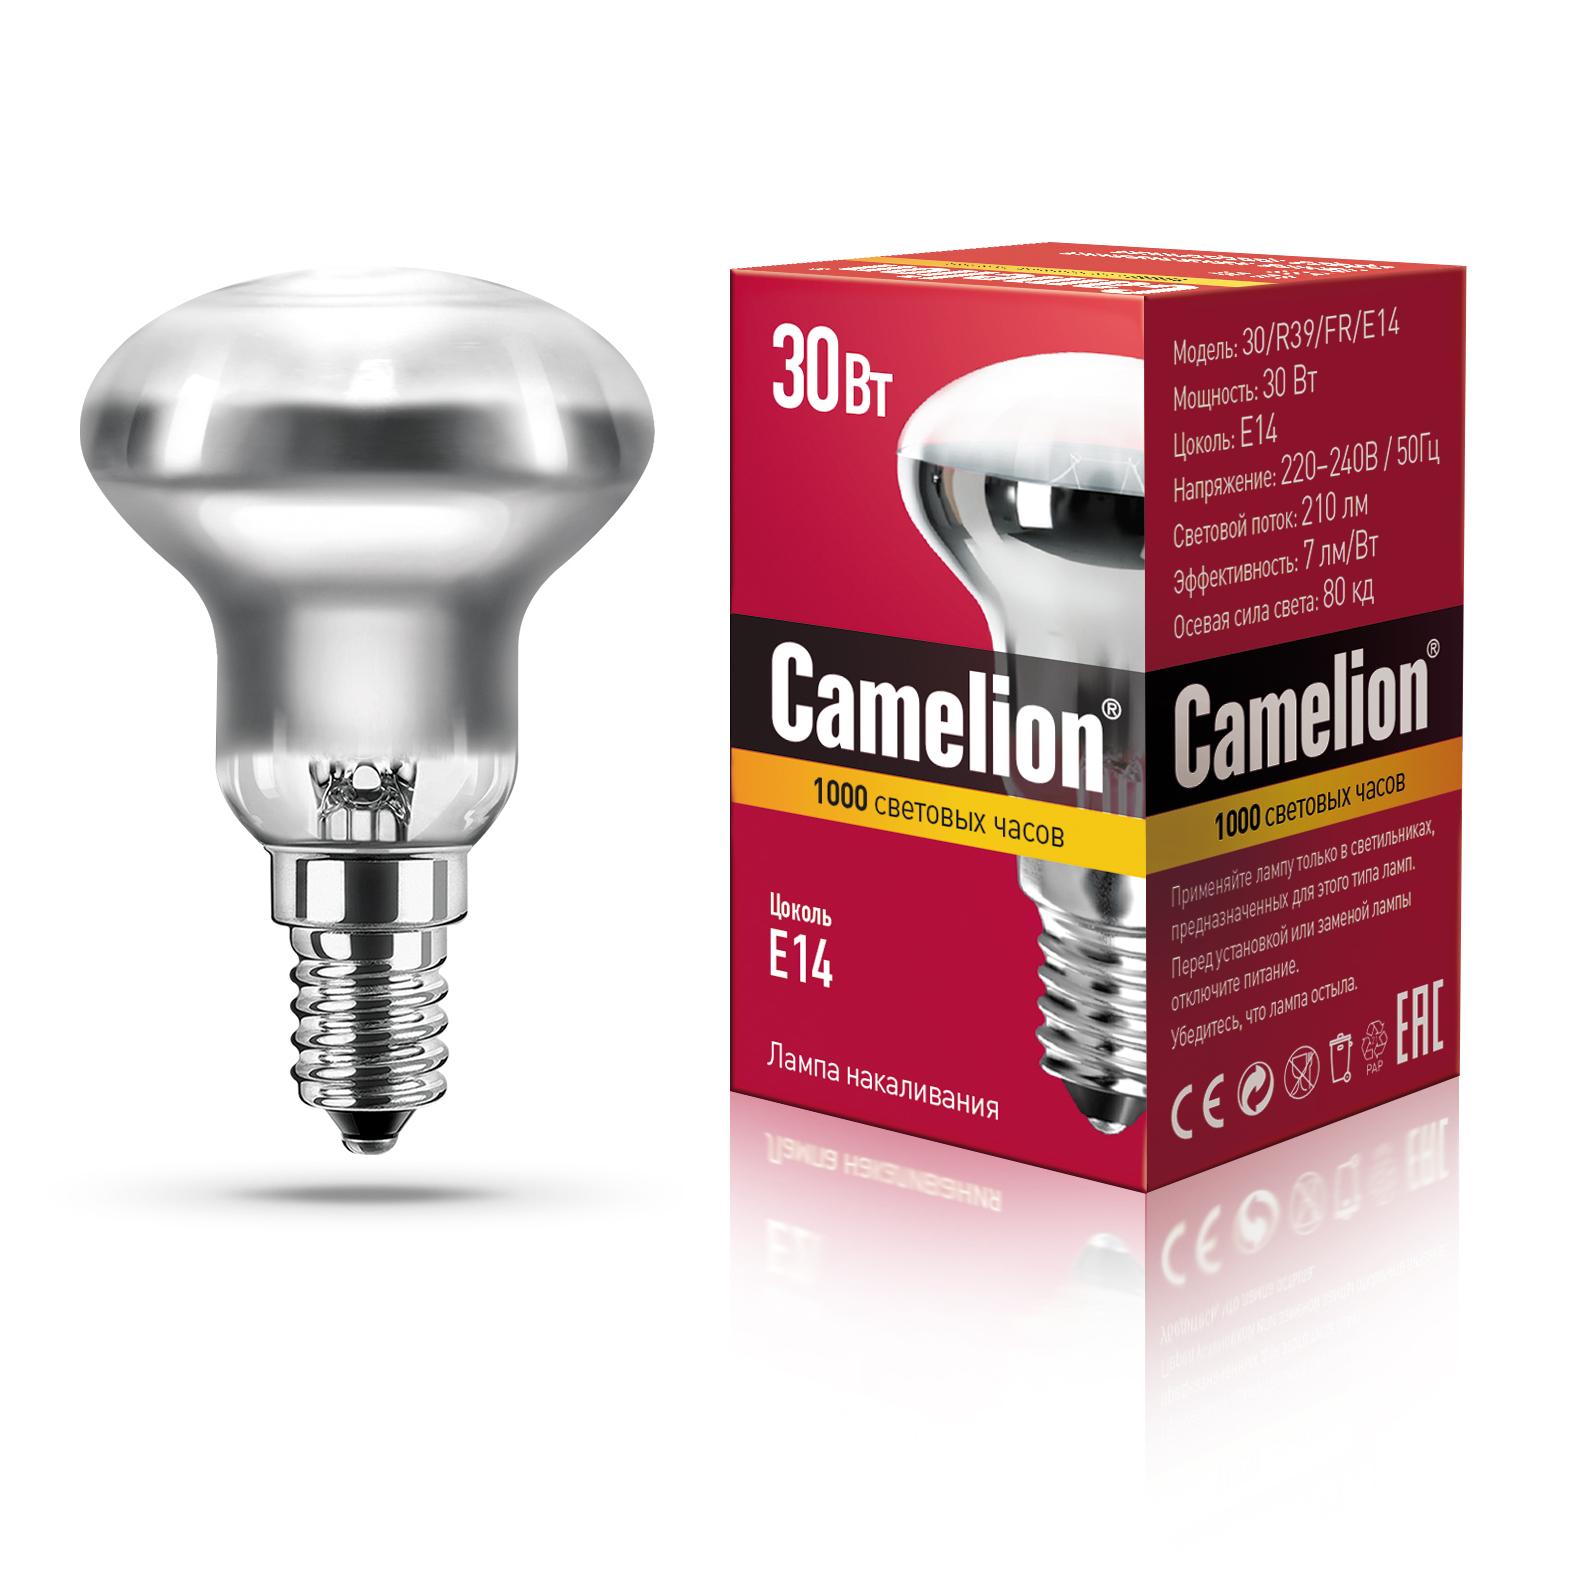 MIC Camelion 30/R39/FR/E14 (Эл.лампа накал. зеркальная матовая)